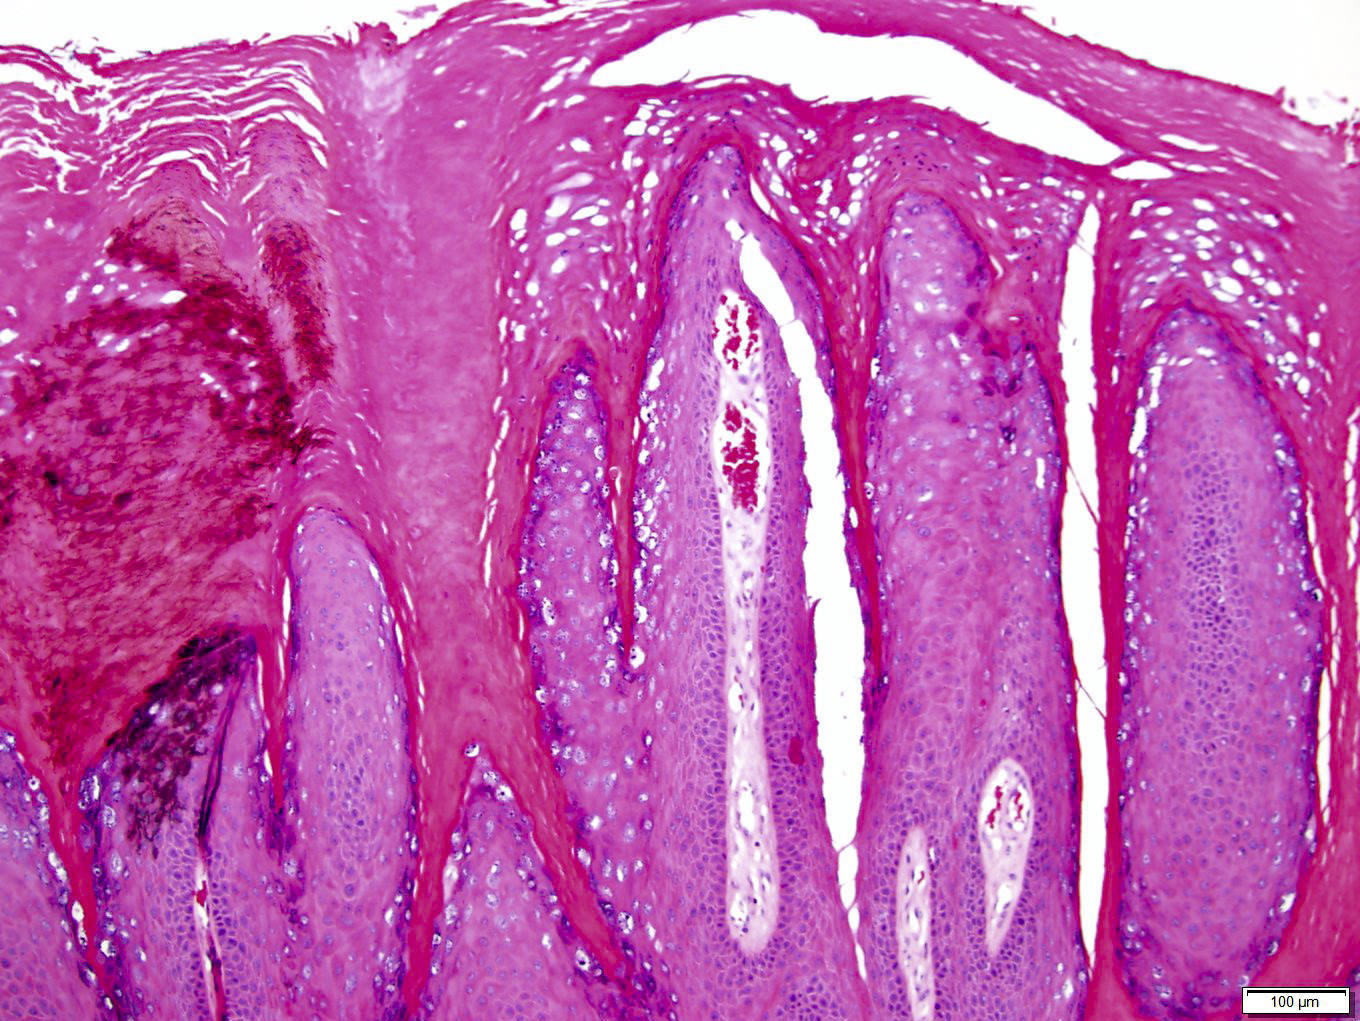 papilloma skin pathology outlines)